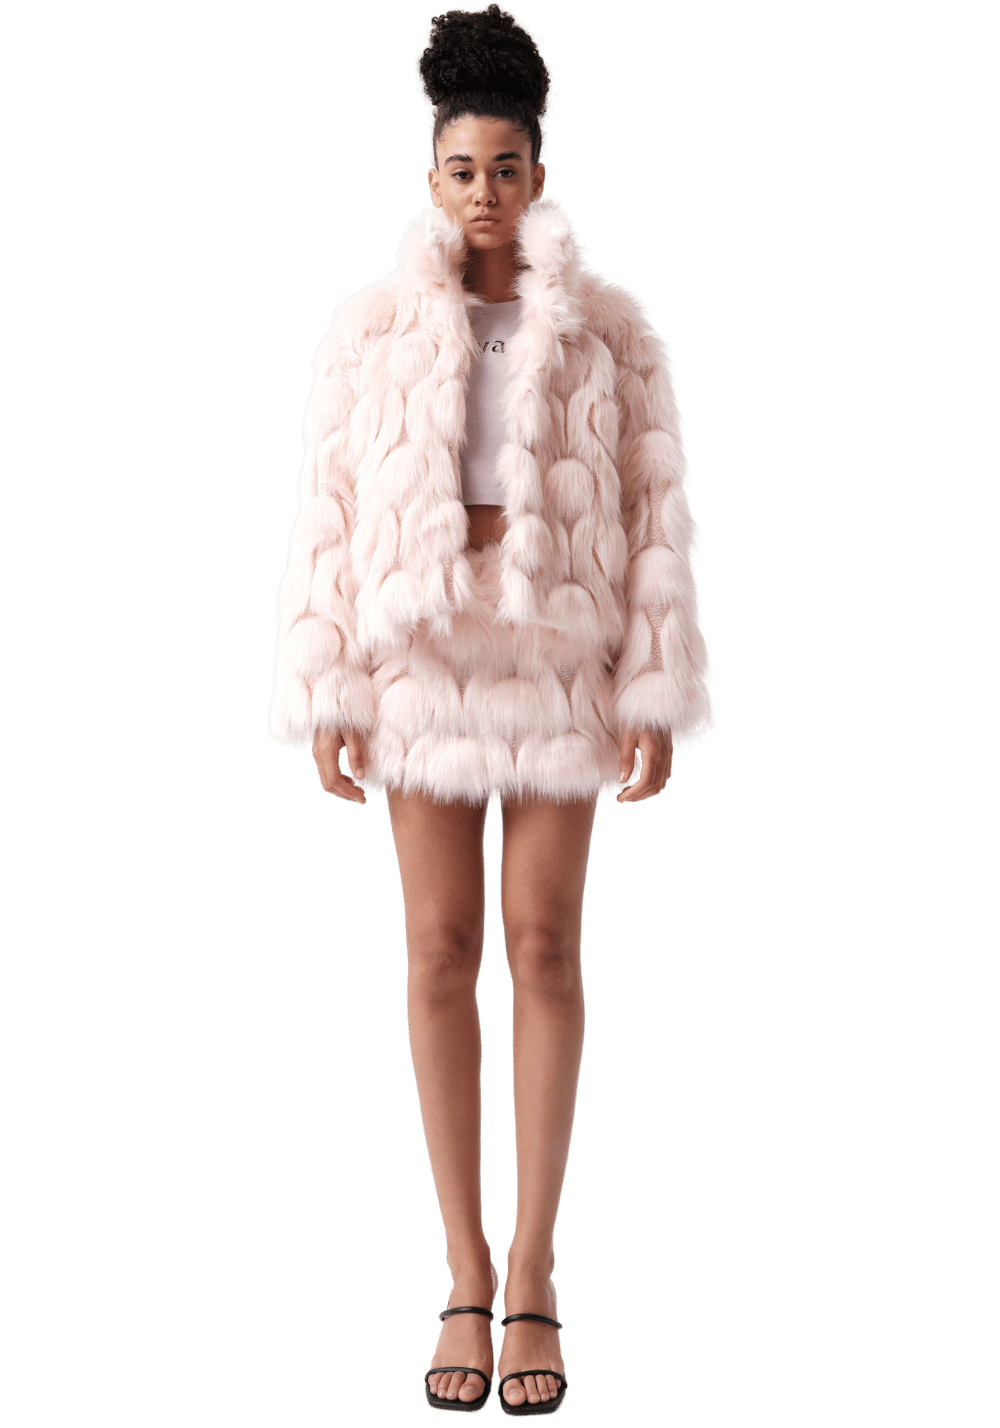 Pink Fur Skirt - PSYLOS 1, Pink Fur Skirt, Dress/Skirt, VANN VALRENCÉ, PSYLOS 1